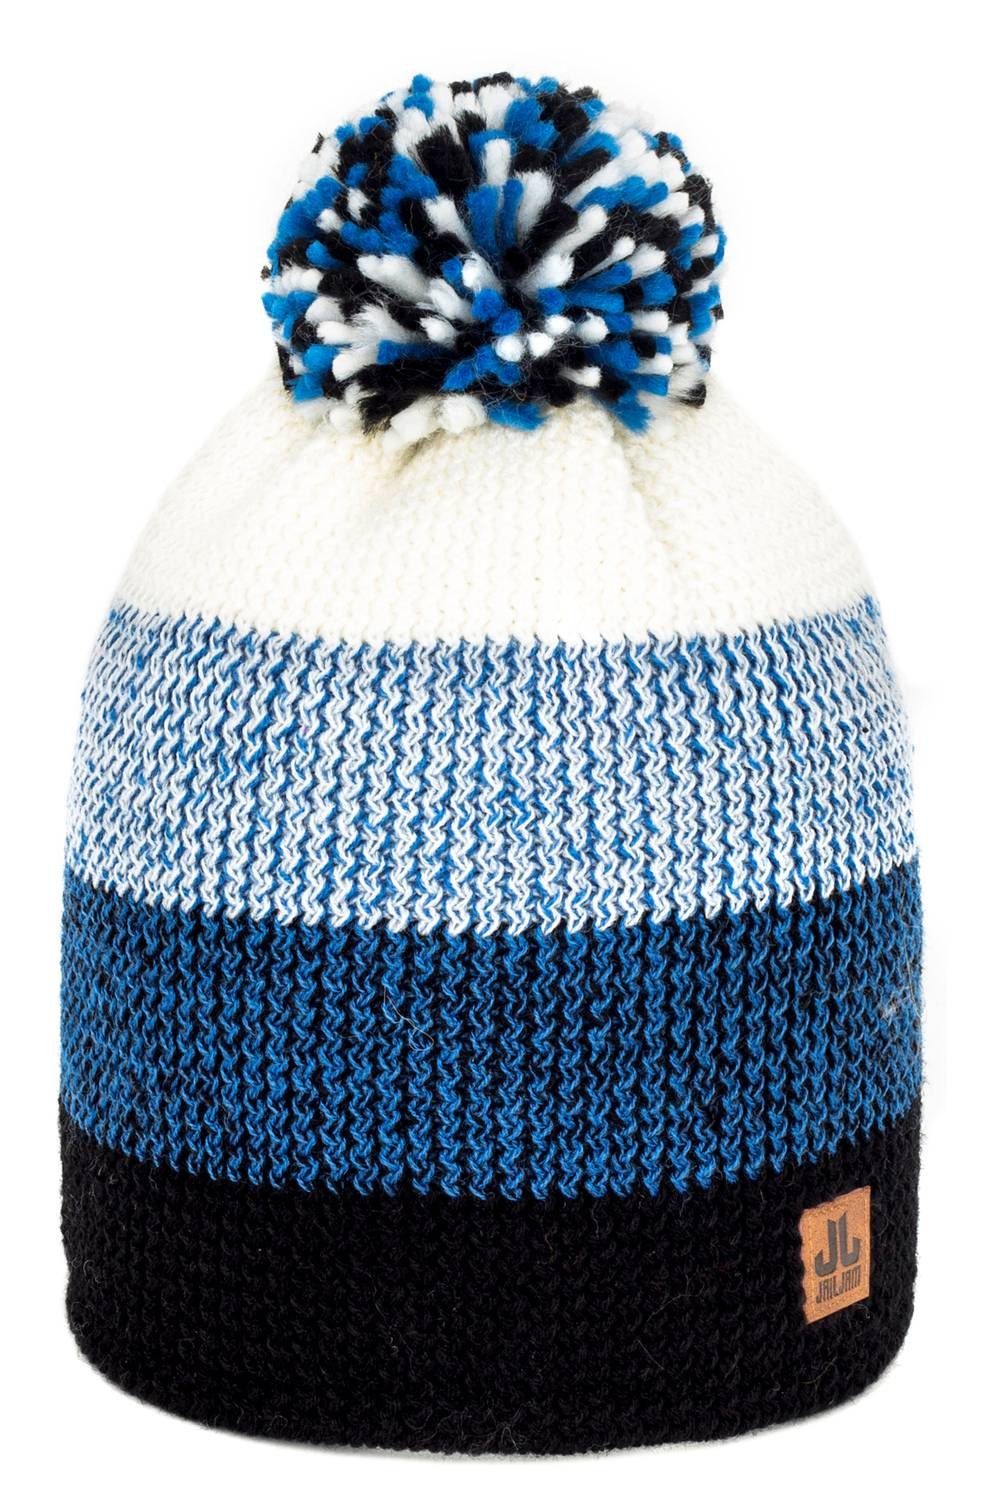 Jail Jam Strickmütze Hochwertige Unisex Winter Bommel-Mütze mit 50% Wollanteil Royal Blue